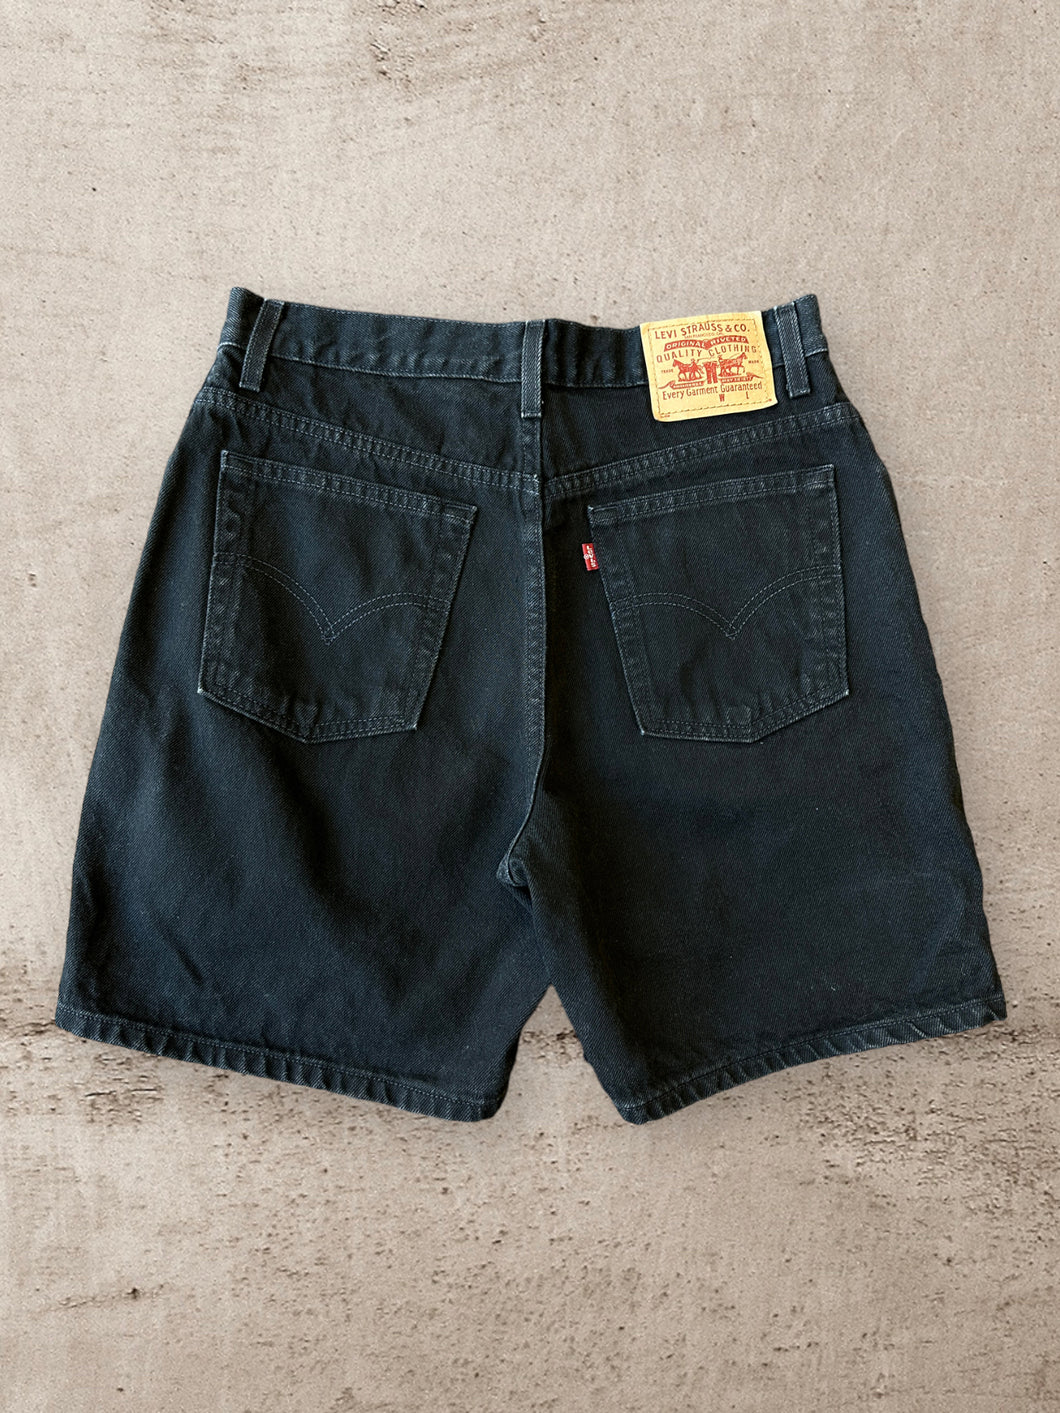 90s Levi Black Jean Shorts - 32”